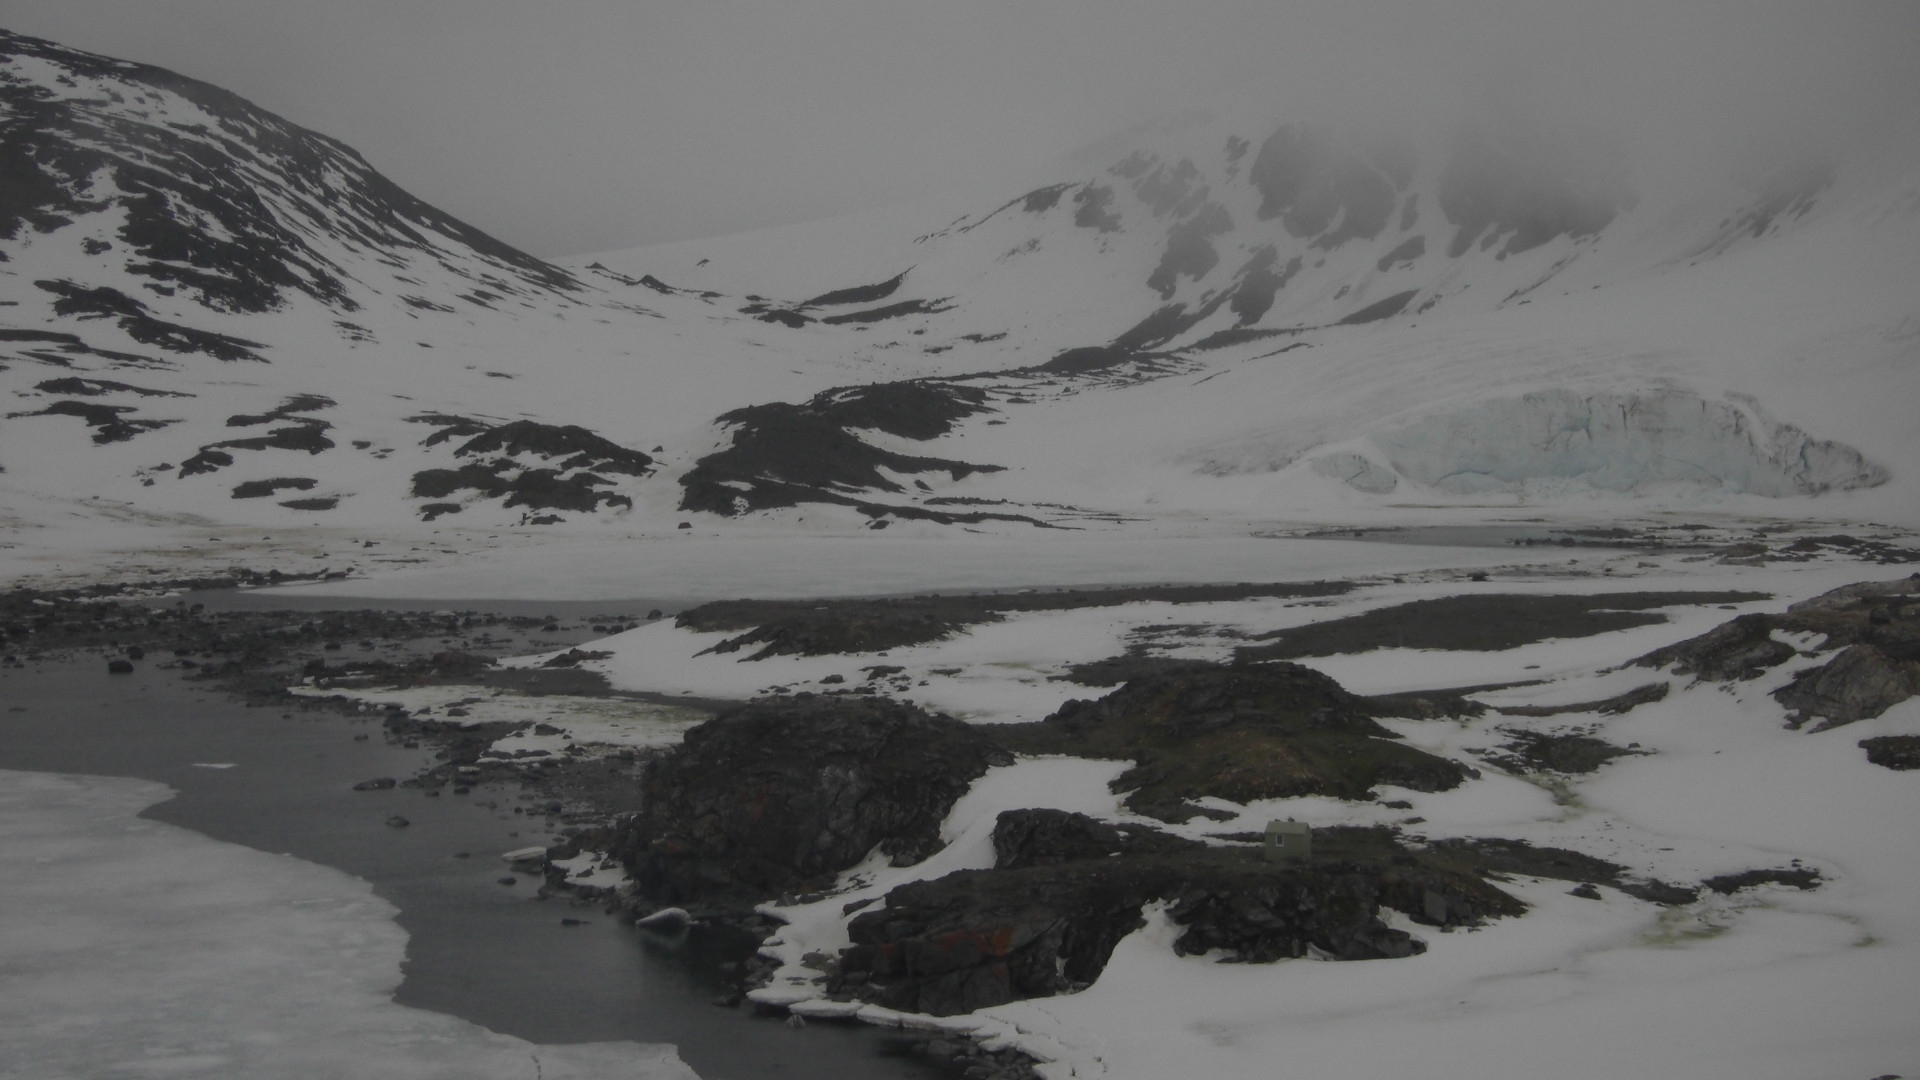 Fotografía de una ladera cubierta de hielo y la costa marina de color gris.